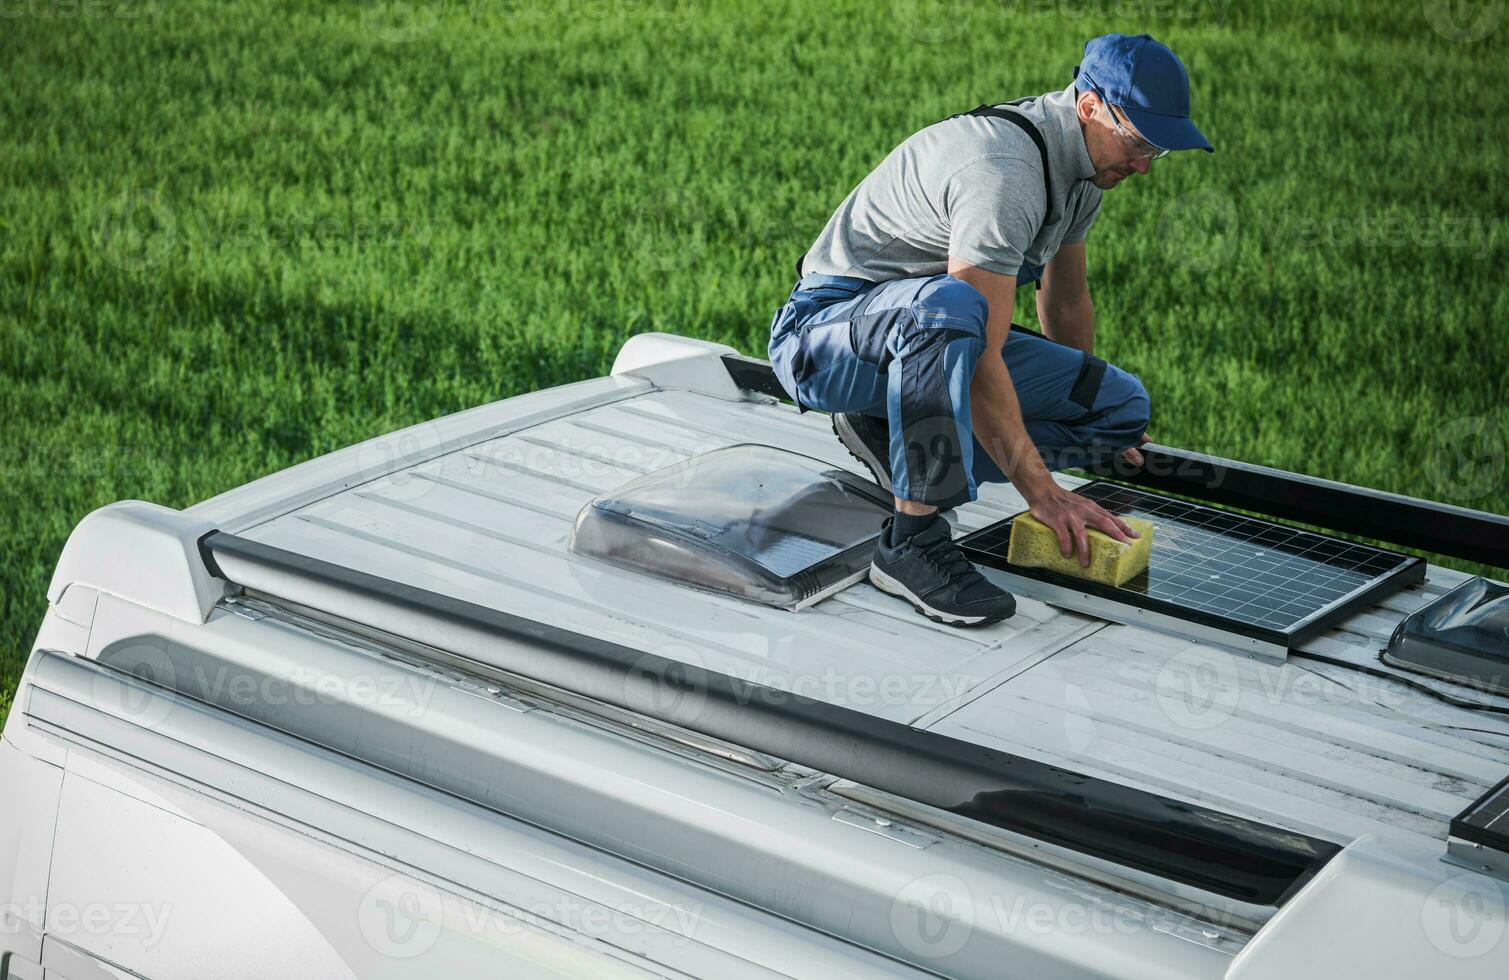 hombres limpieza camper camioneta rv techo instalado solar paneles foto